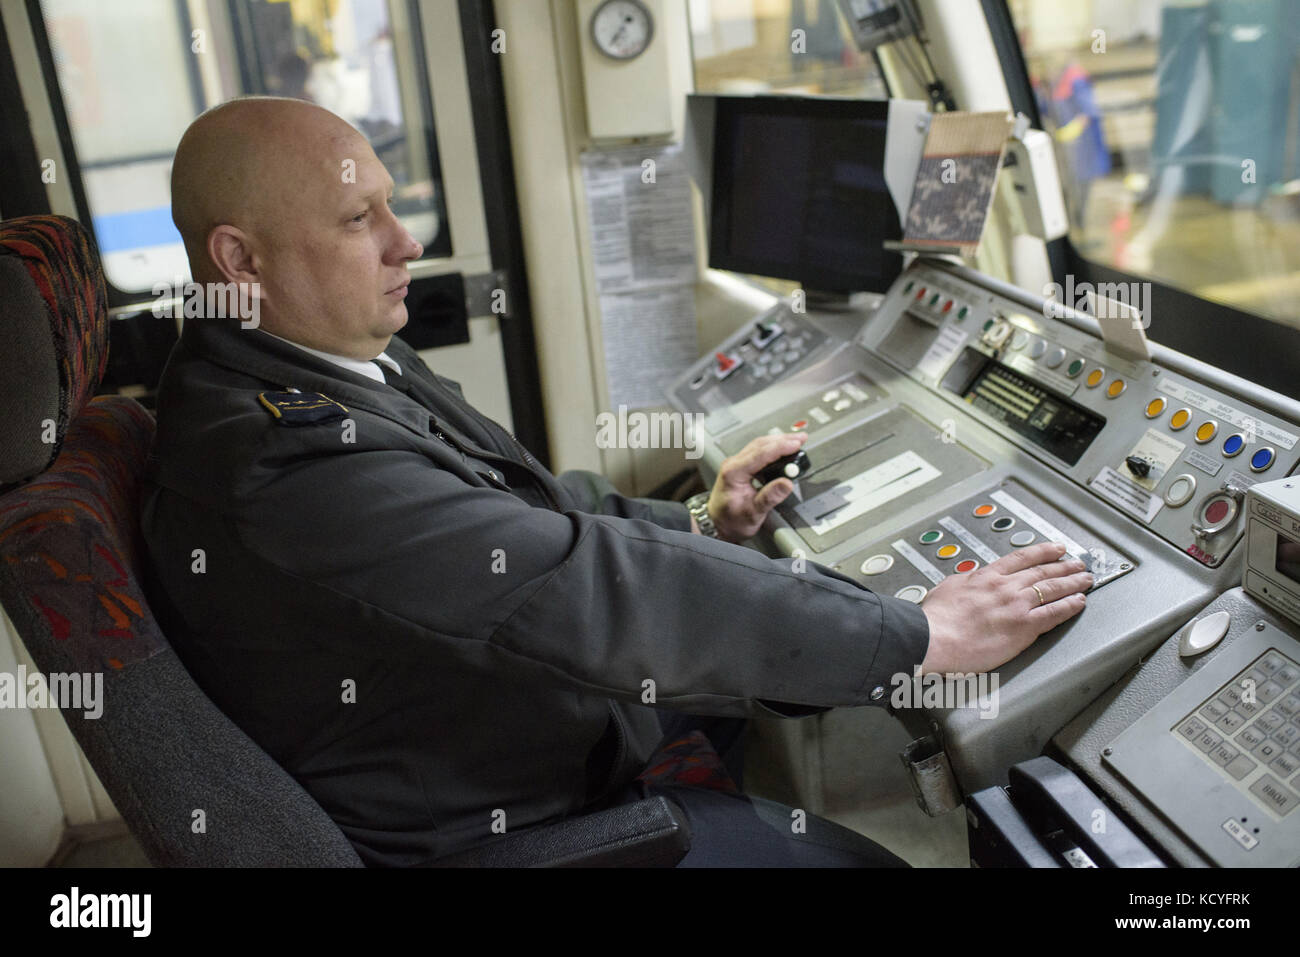 Dmitry khabarov gearbeitet hat 17 Jahre lang an der metropolitain, er ist ein rudern Fahrer, er kommt jeden Tag in das Depot Center seinen Tag zu beginnen. Er worke Stockfoto